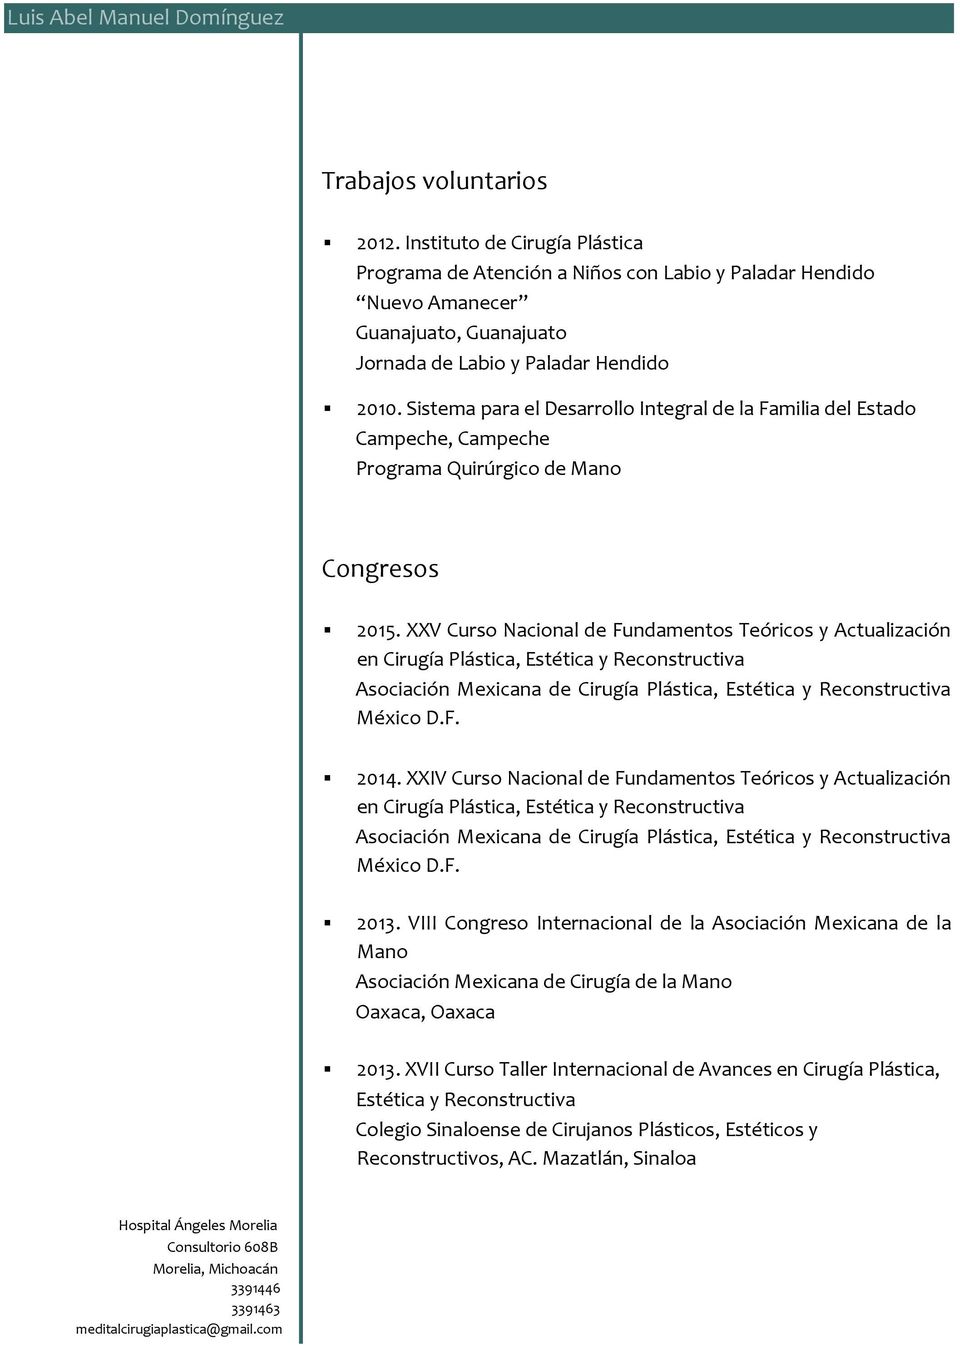 XXV Curso Nacional de Fundamentos Teóricos y Actualización en Cirugía Plástica, Estética y Reconstructiva México D.F. 2014.